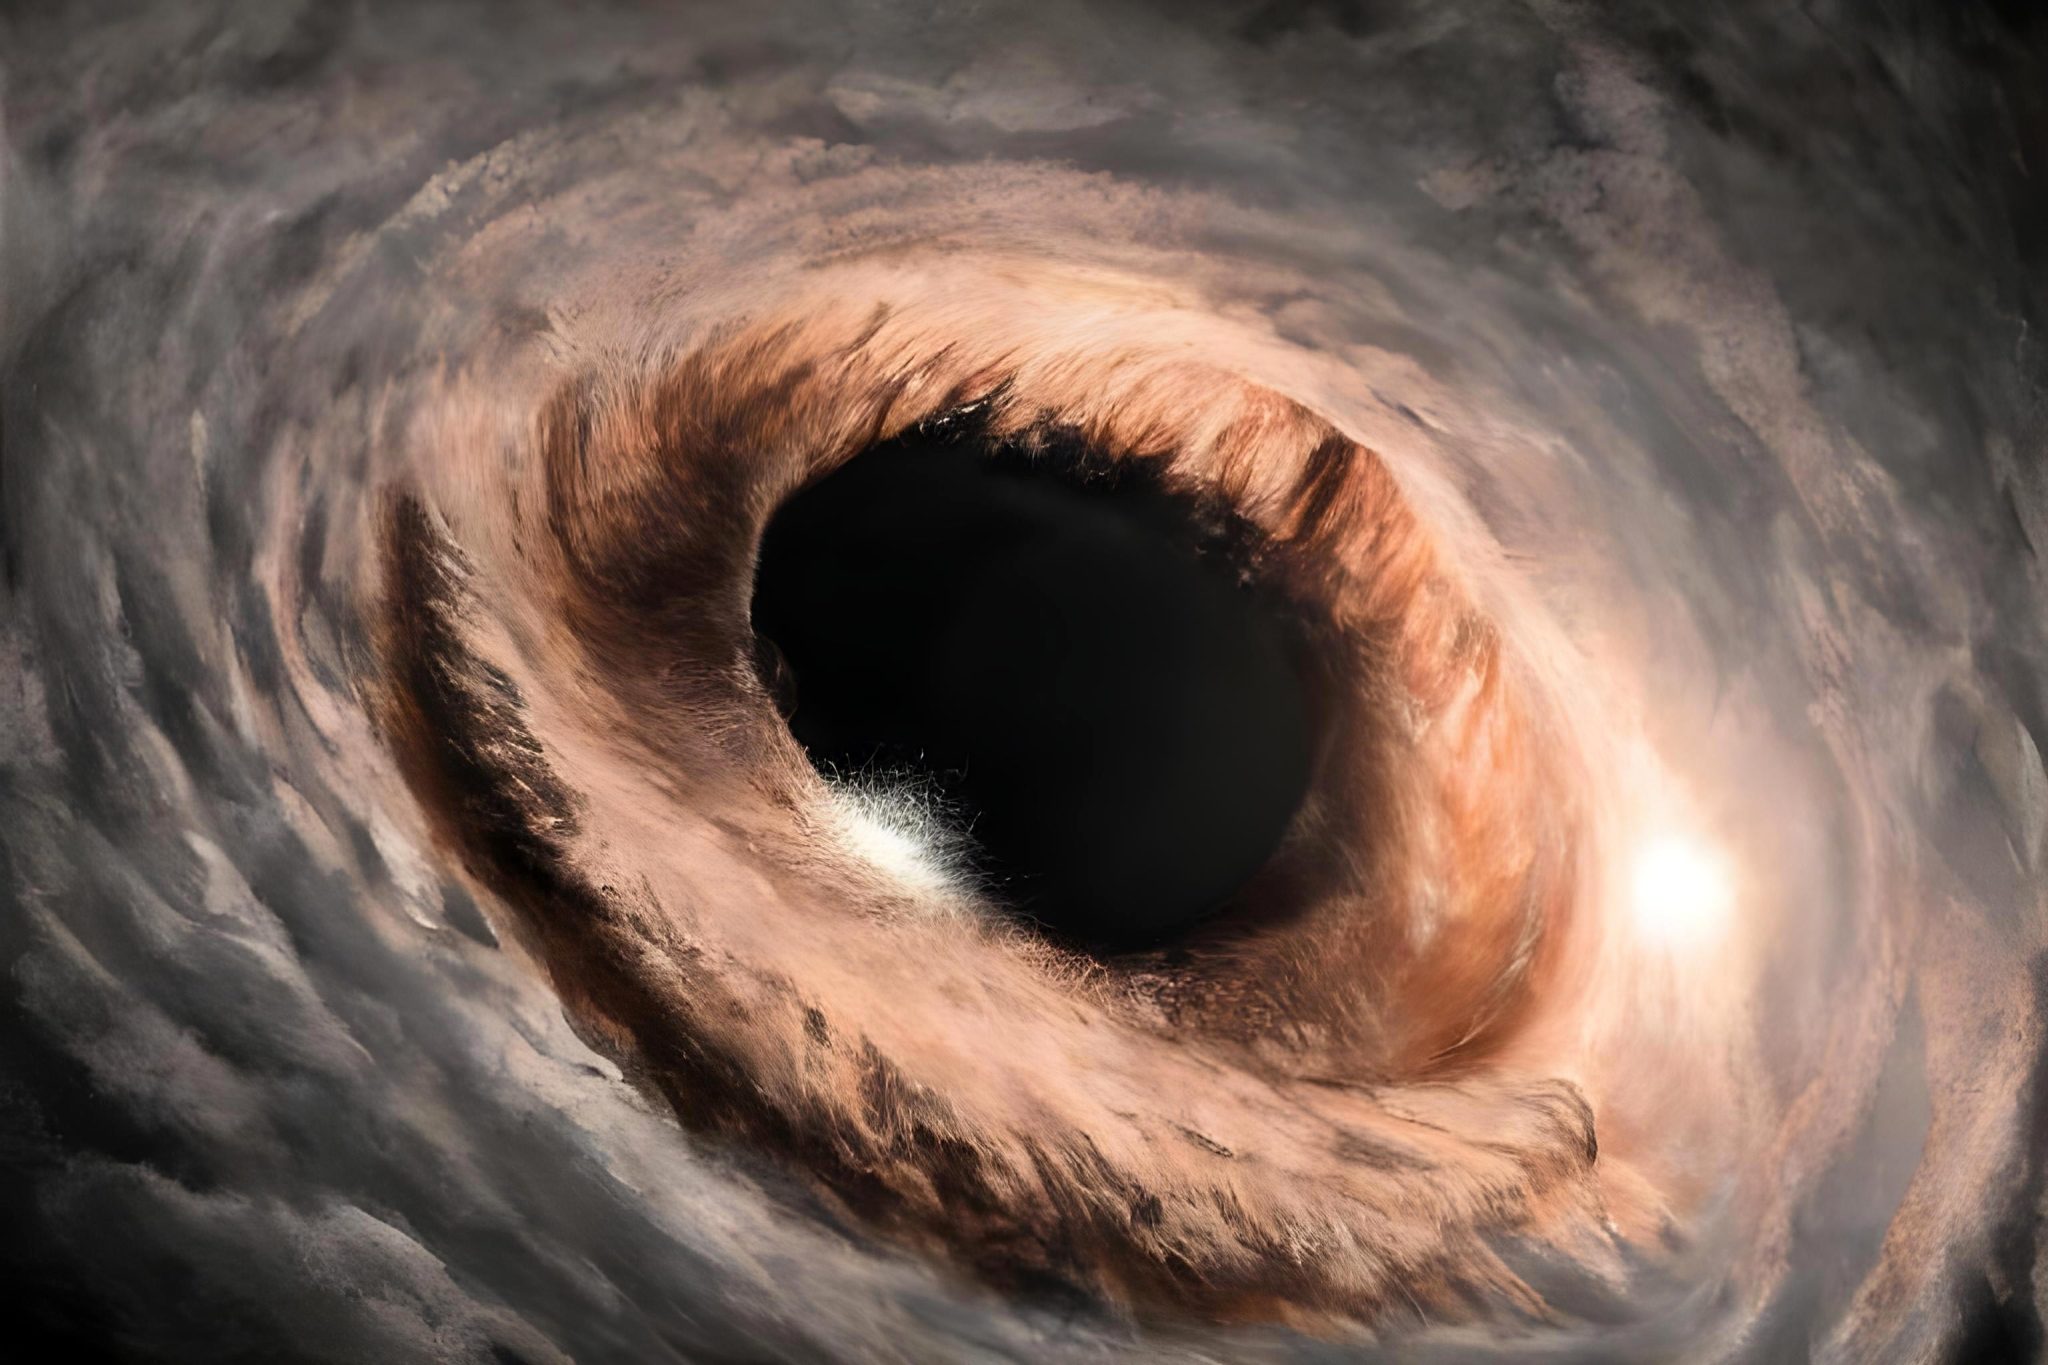 Black hole tome terraria фото 31